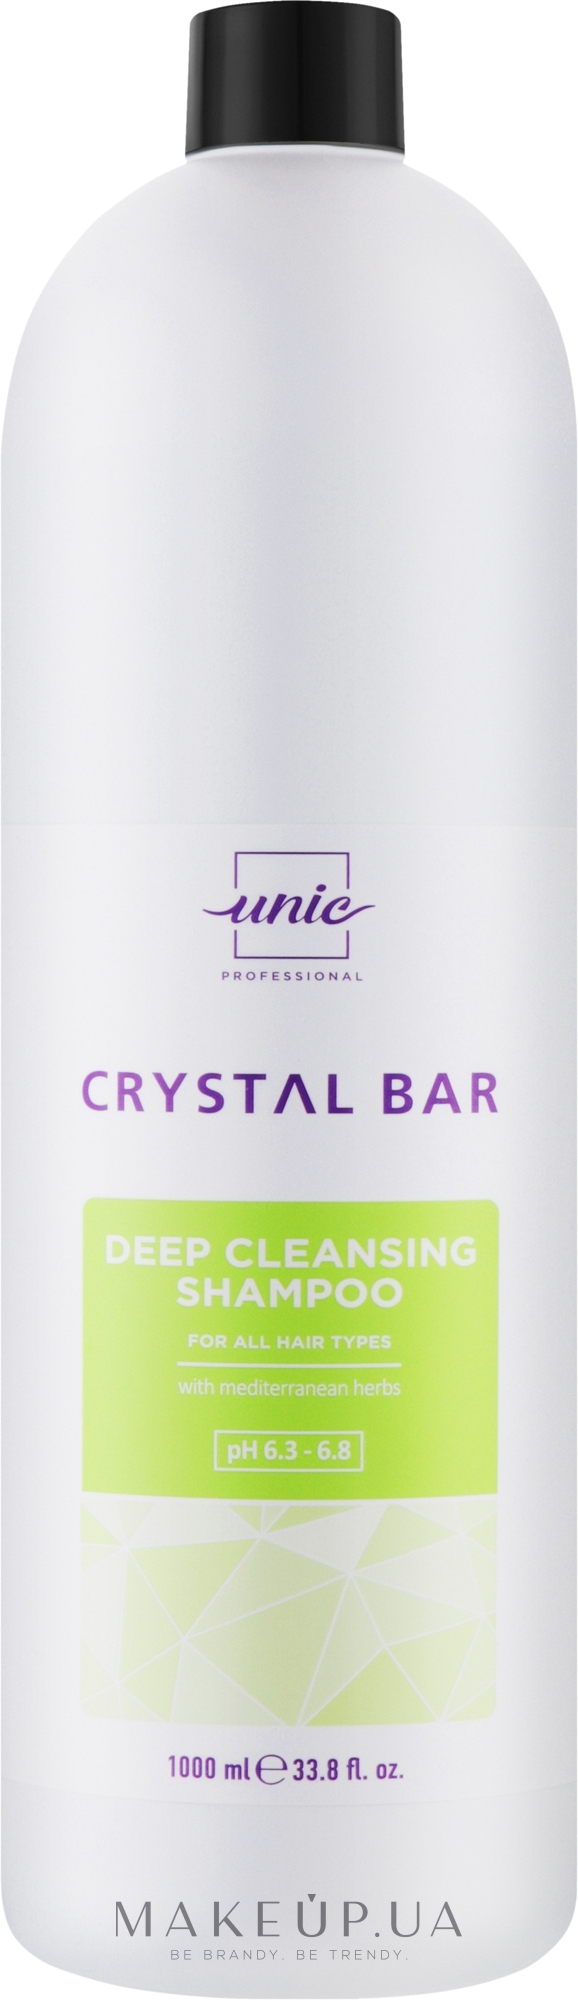 Шампунь для глибокого очищення - Unic Crystal Bar Deep Cleansing Shampoo — фото 1000ml